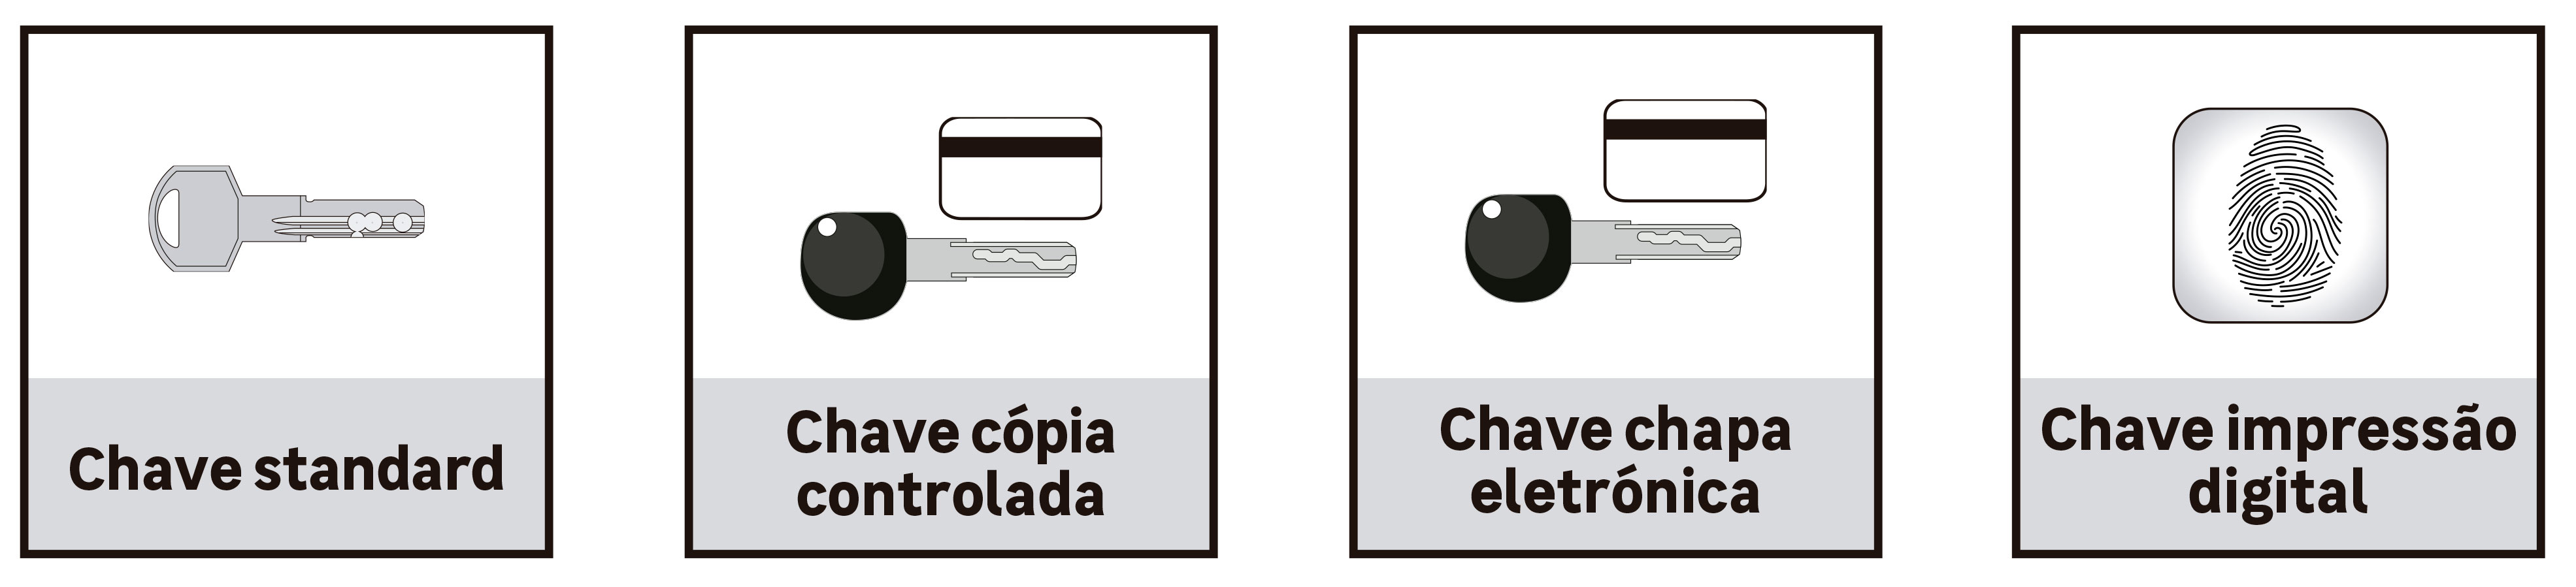 4 tipos de chave: standard, cópia controlada, chapa eletrónica e impressão digital